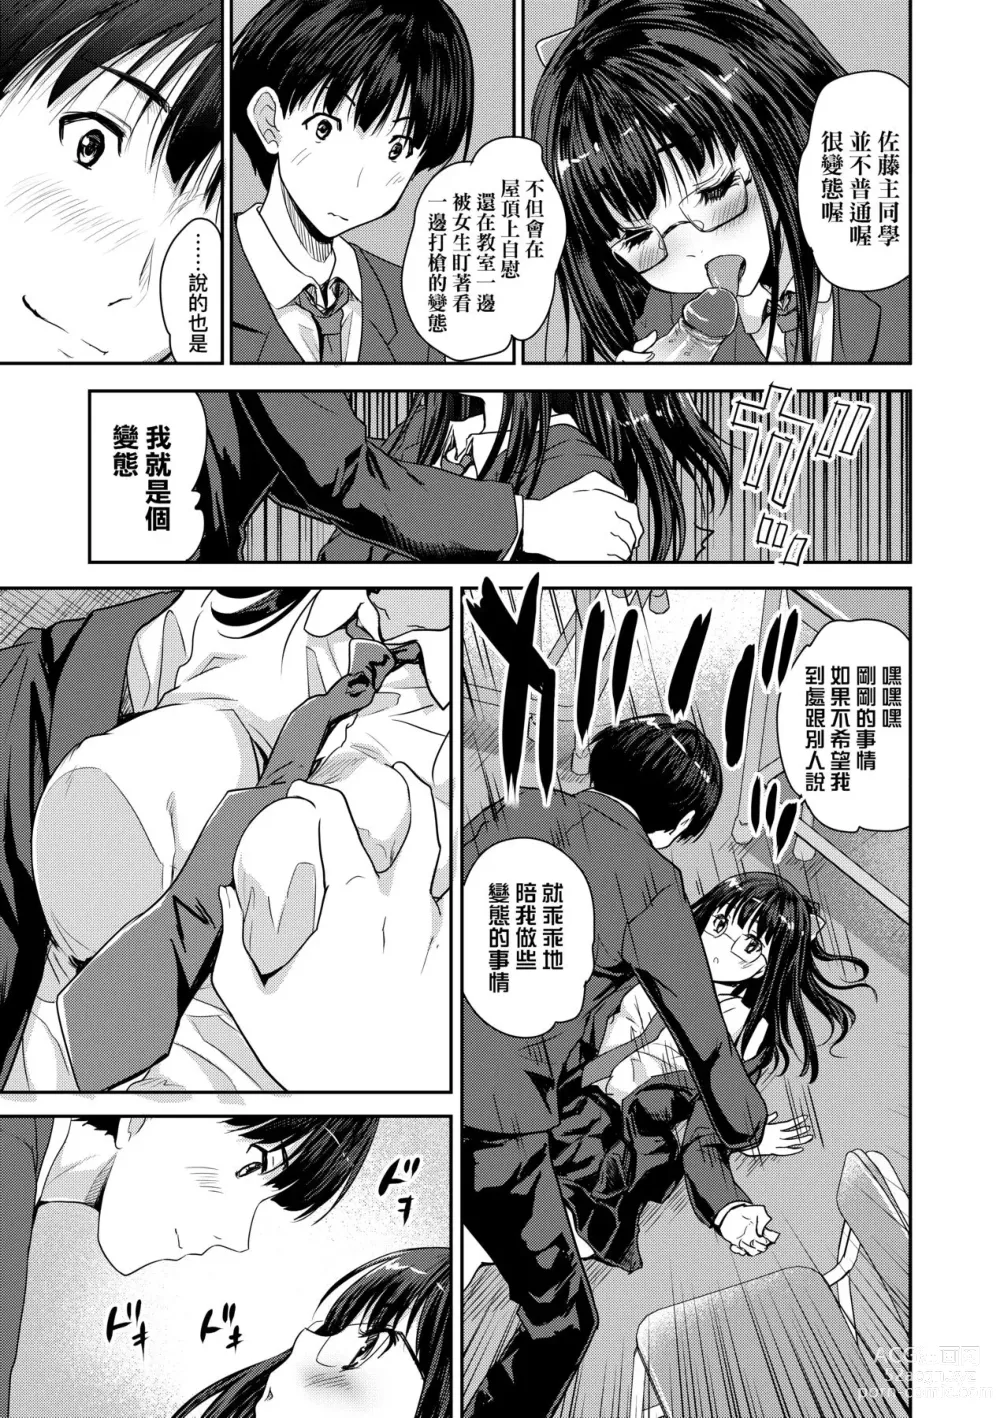 Page 188 of manga 把玩妳綿軟歐派並含入口中品嘗 (decensored)